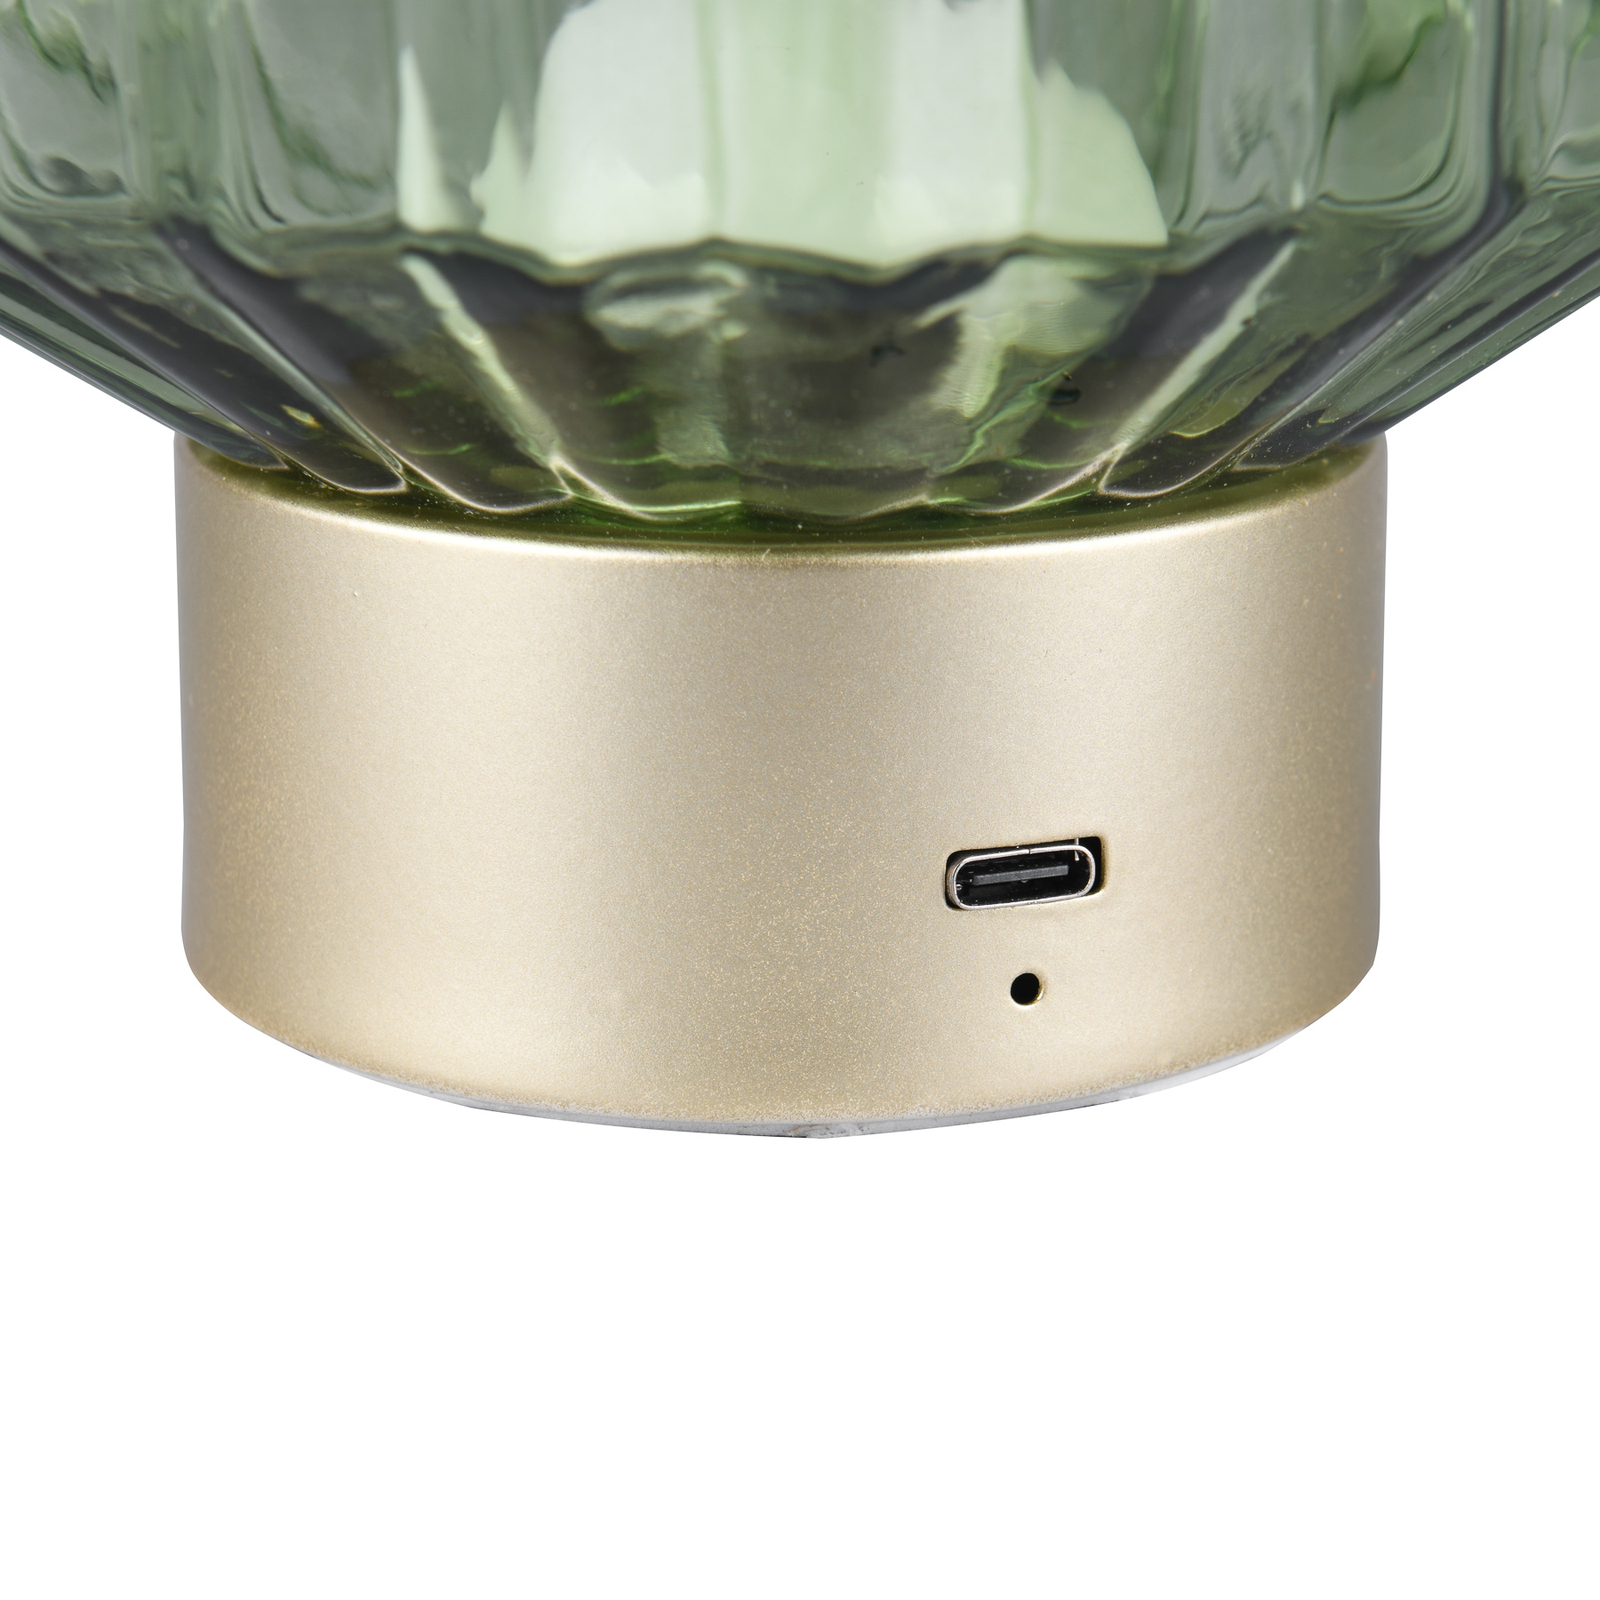 Настолна лампа Lord LED с възможност за презареждане, месинг/зелено,